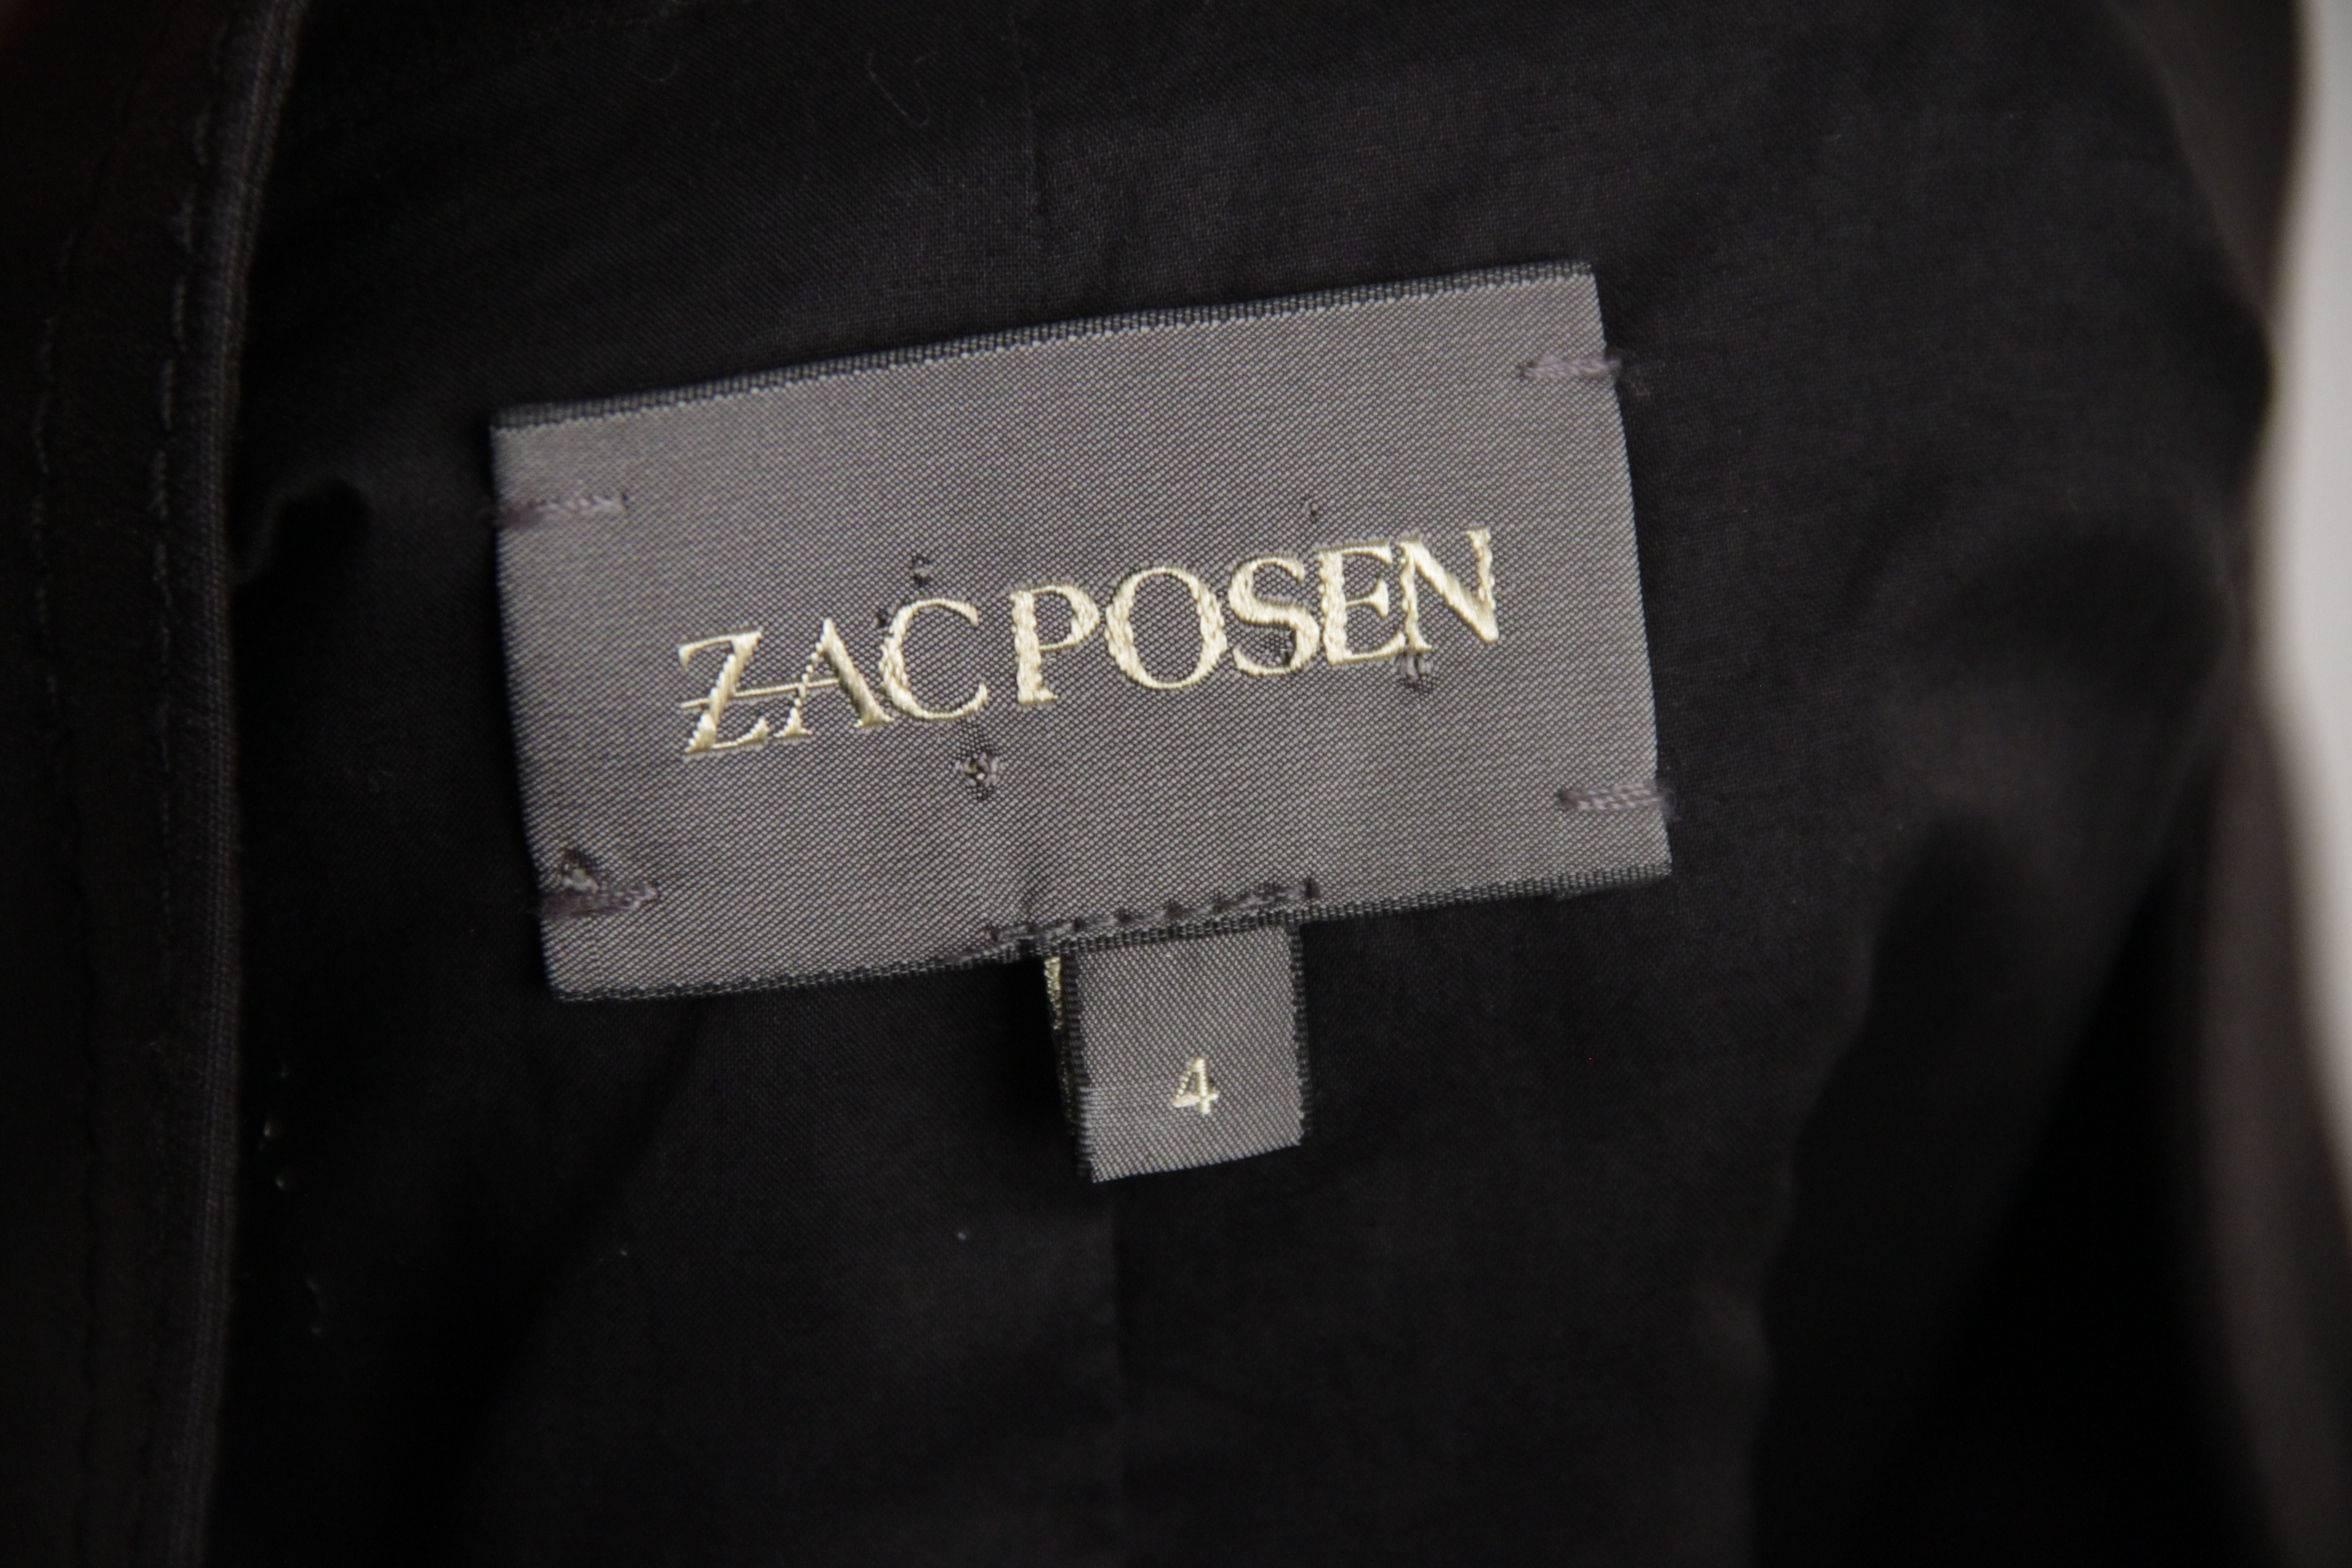  ZAC POSEN Black Cotton Blend PANELLED Sheath DRESS Size 4  1